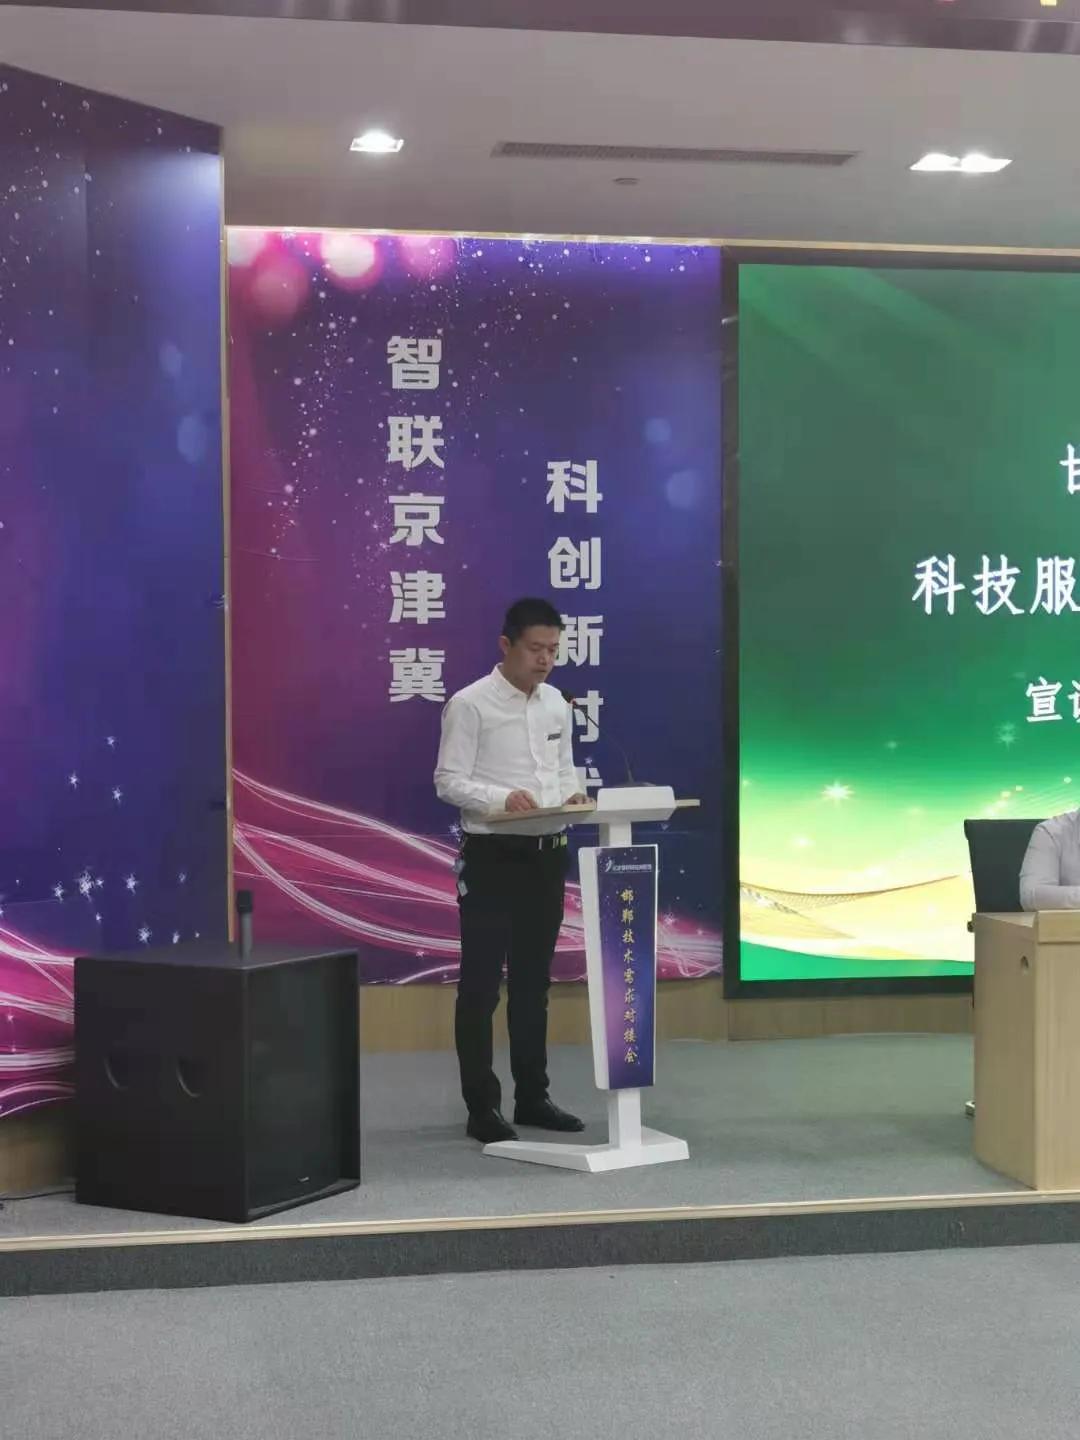 邯郸市绿色环保联合会科技服务专业委员会成立